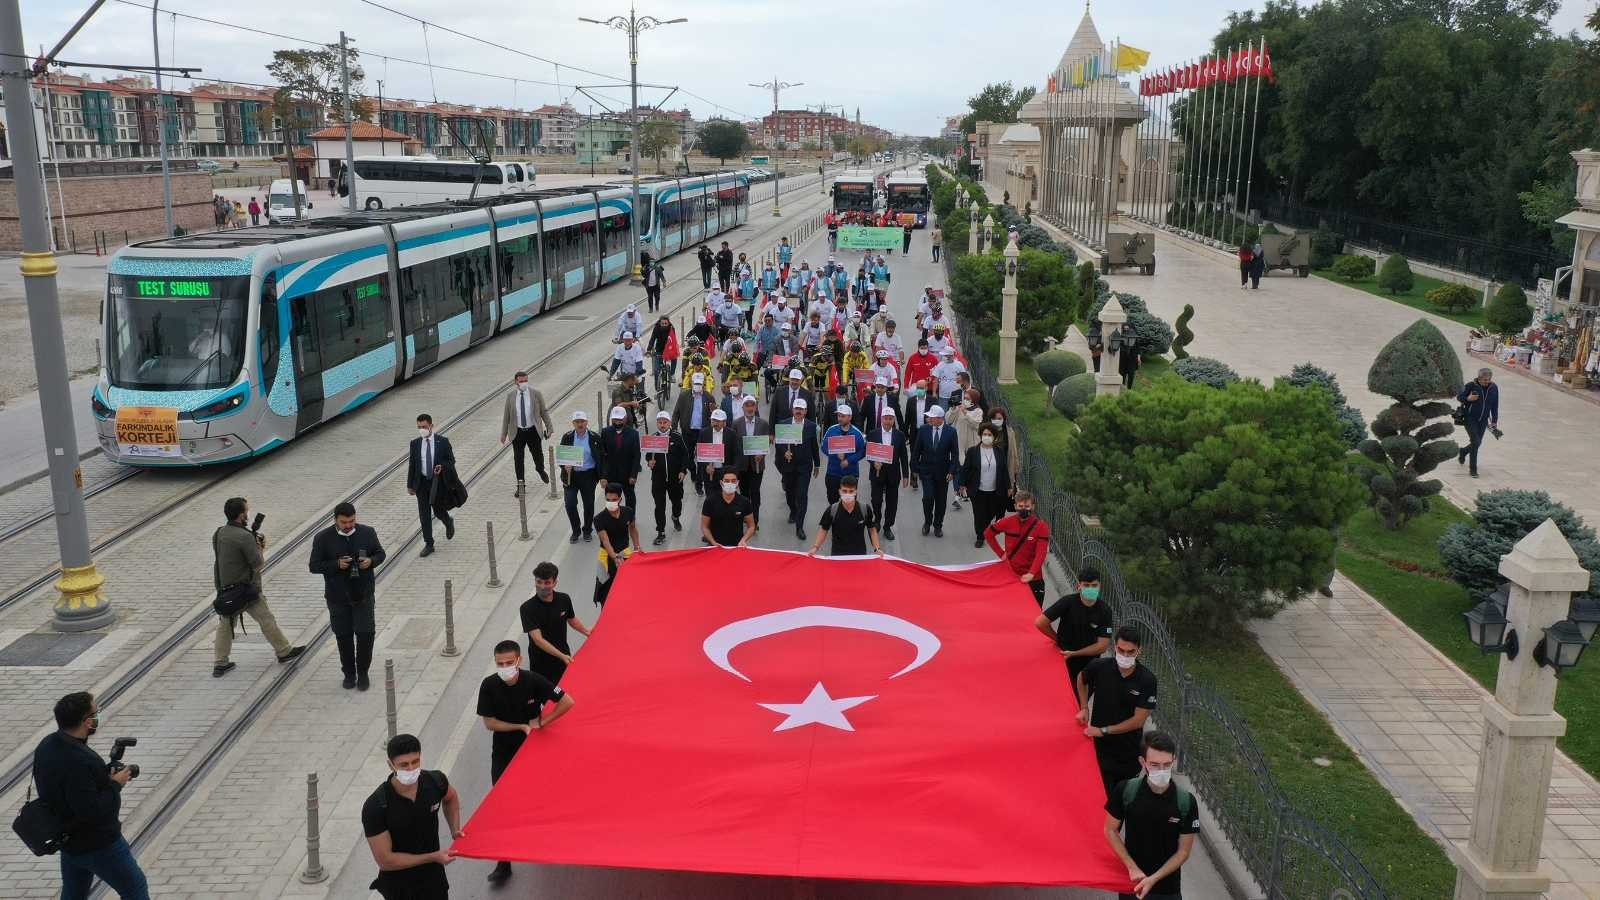 Avrupa Hareketlilik Haftası Konya’da dolu dolu geçti #konya